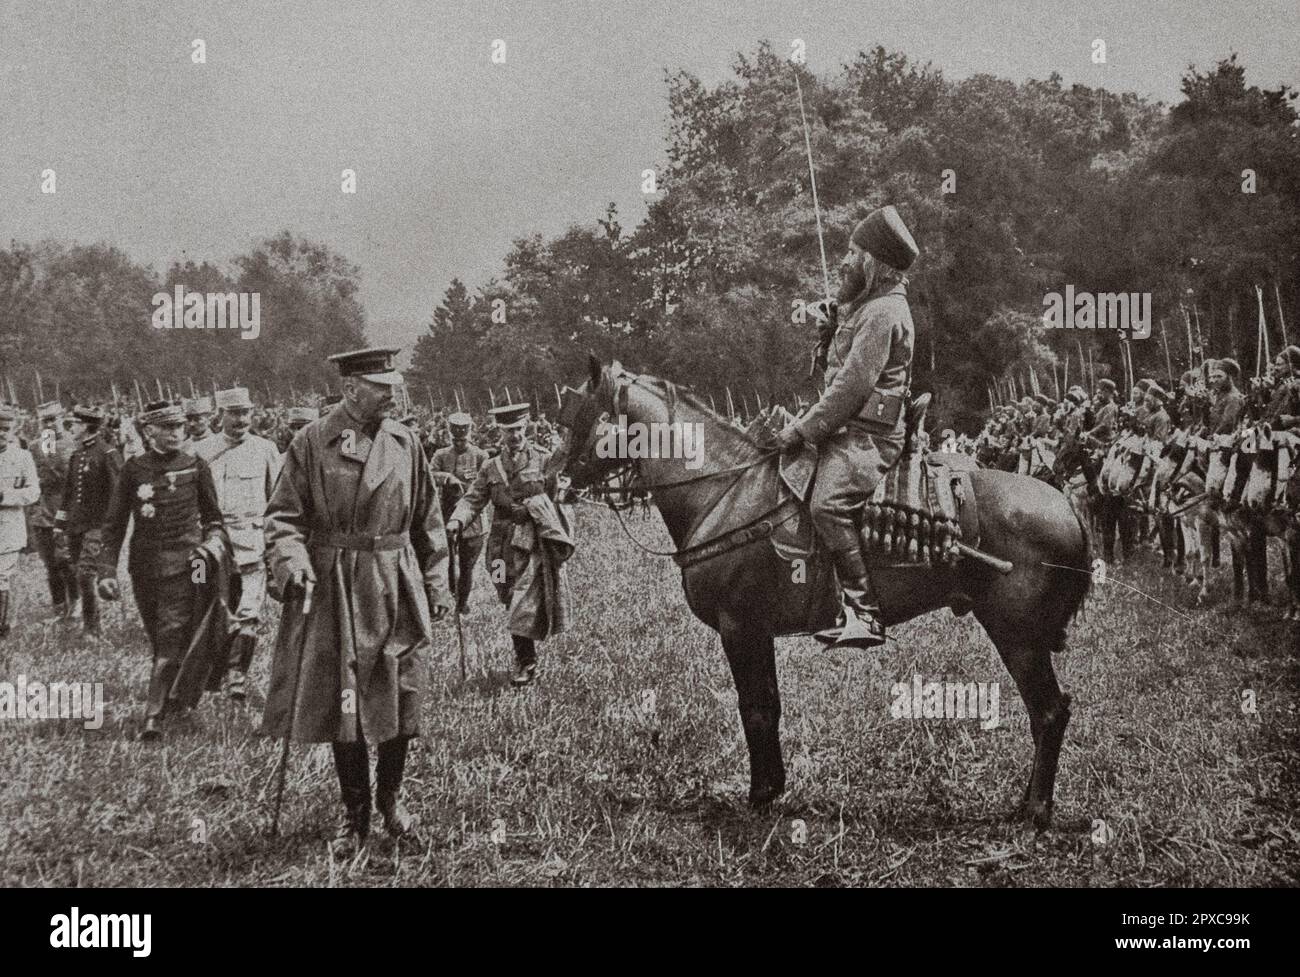 Première Guerre mondiale Lord Kitchener, après avoir passé en revue les troupes indigènes de l'armée africaine, échange quelques mots en arabe avec un officier de spahis algérien. 1915 Banque D'Images